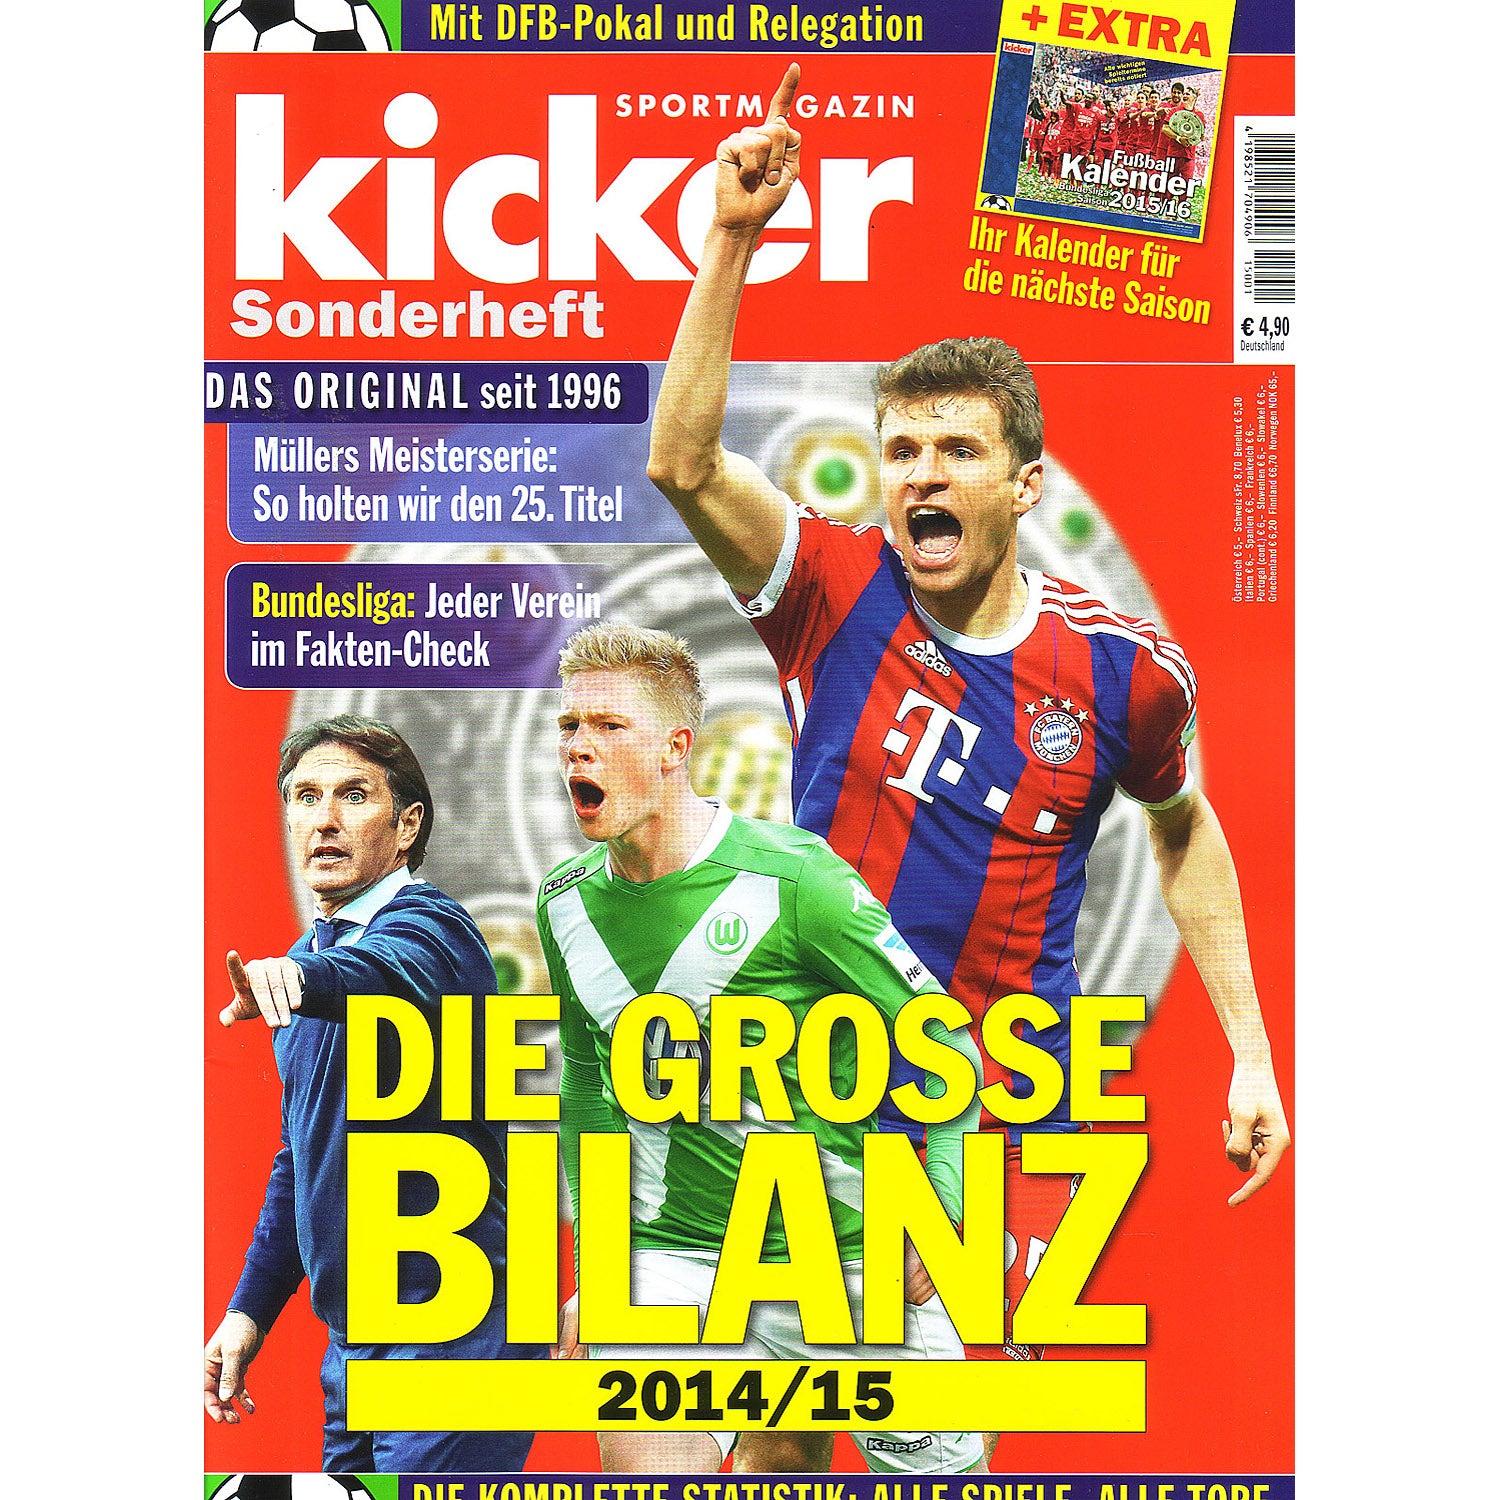 Kicker Sonderheft – Die Grosse Bilanz 2014/15 Finale (German Season Review)